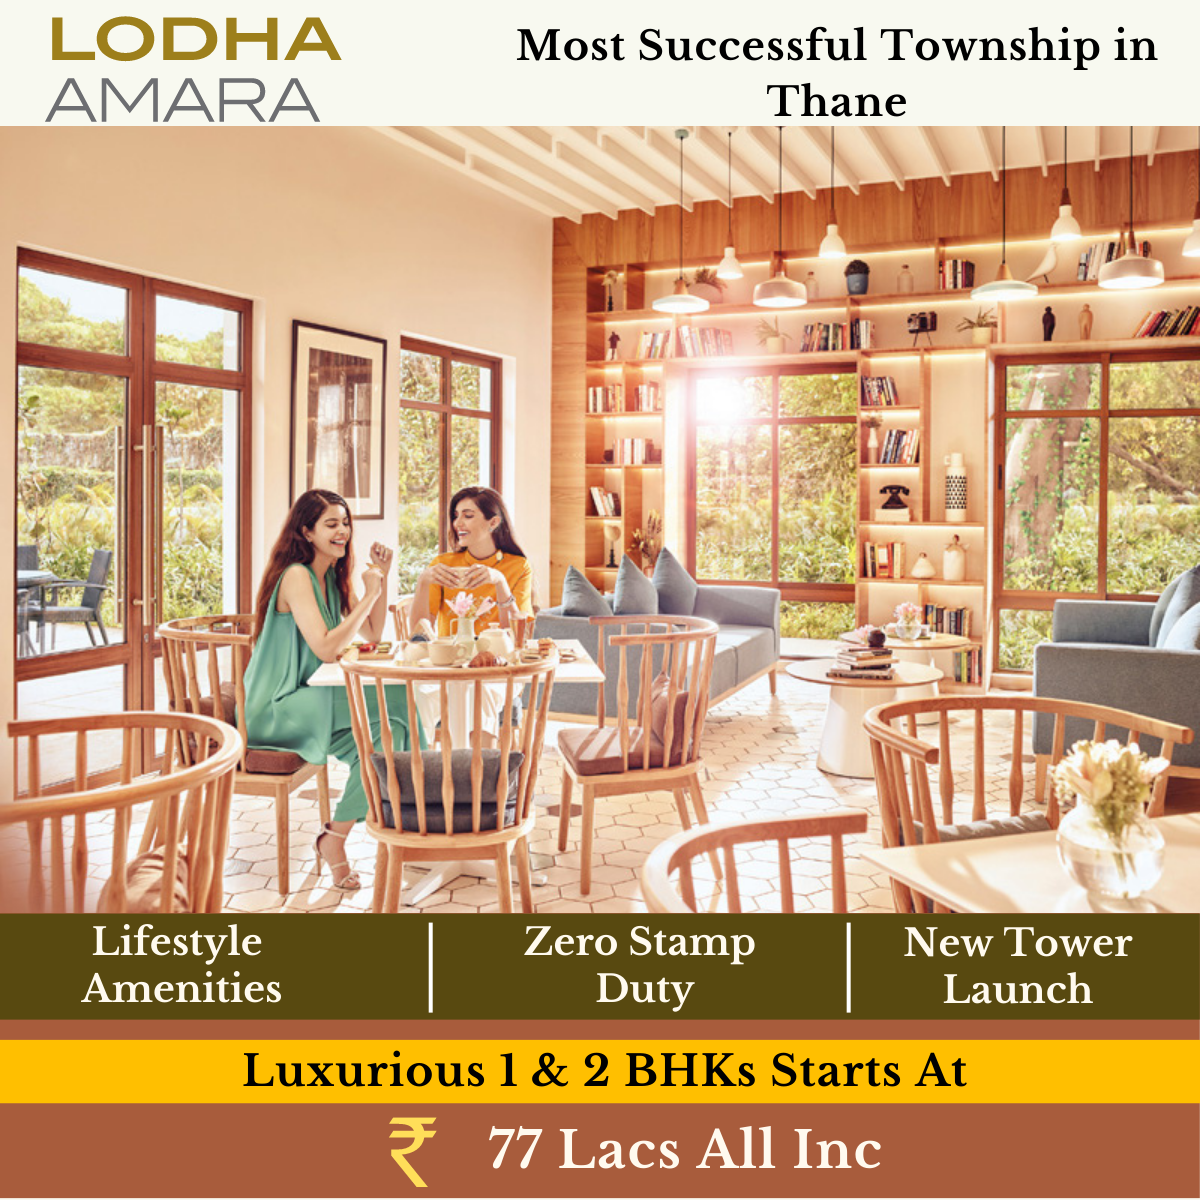 Luxury 1 & 2 BHK residences Rs 77 Lac at Lodha Amara in Mumbai Update